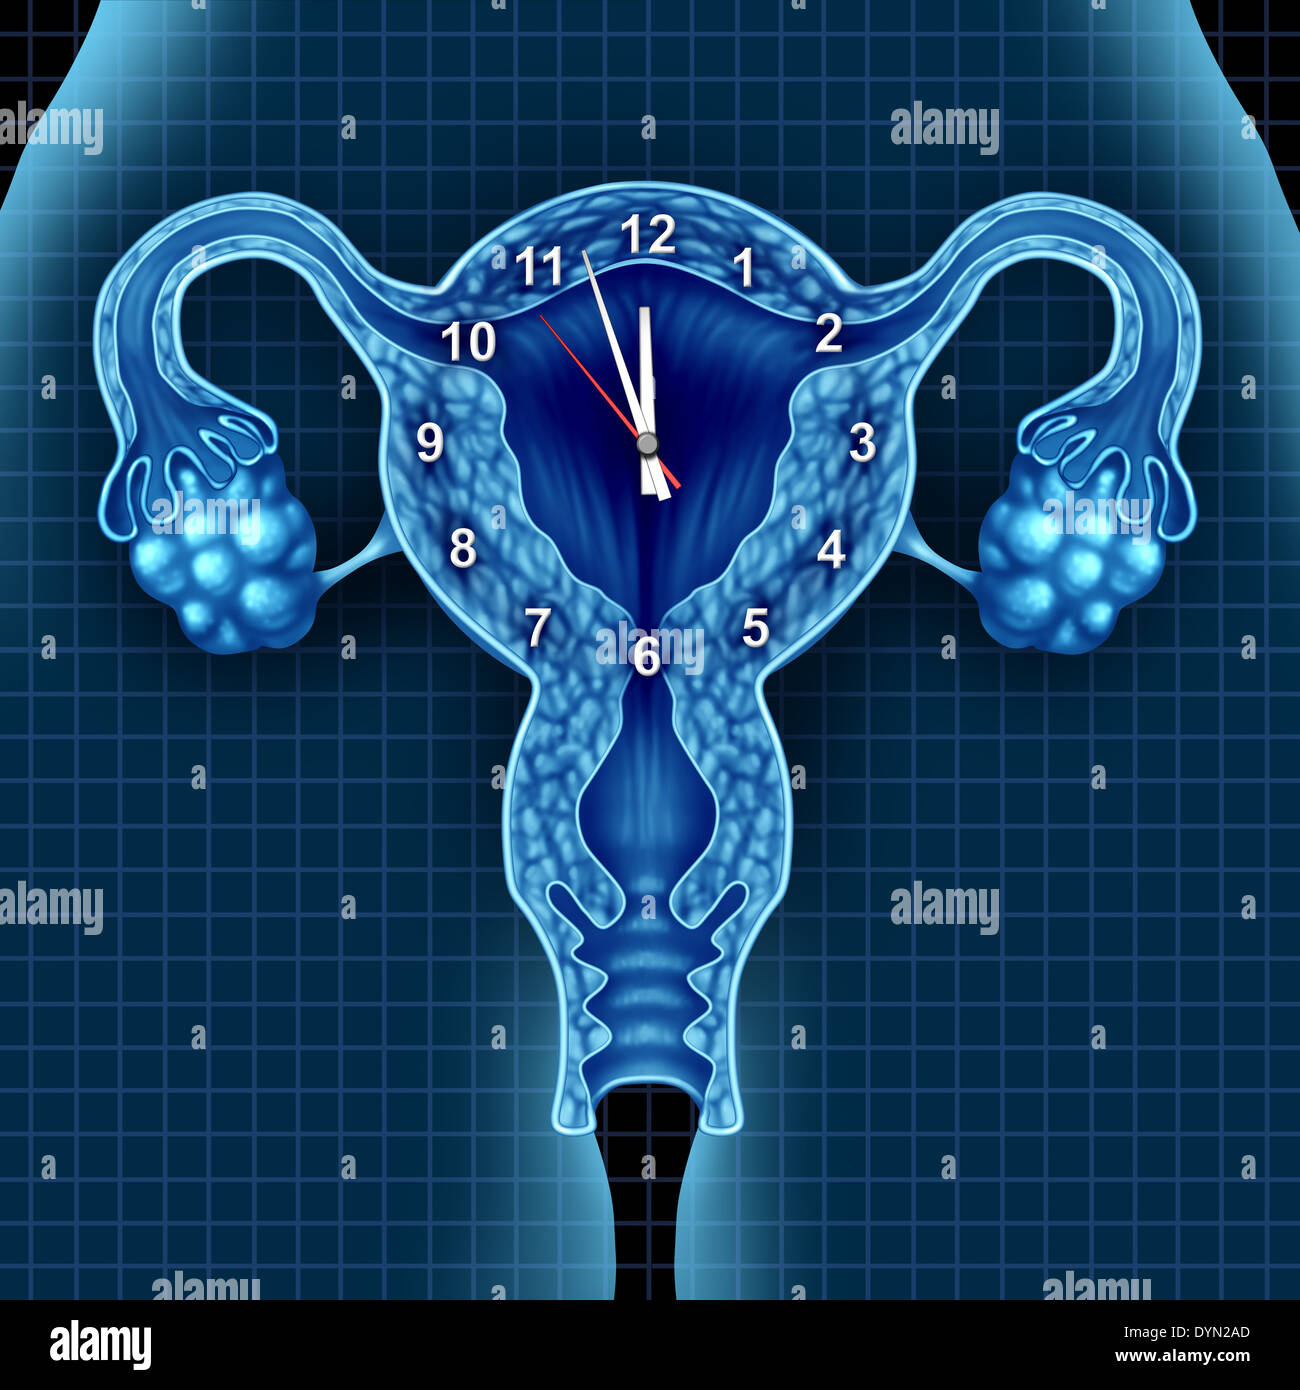 Reloj biológico tictac concepto con una pieza sobre útero y ovarios humanos  como una metáfora para la fertilidad el estrés de hacer un niño frente a la  edad reproductiva de una mujer